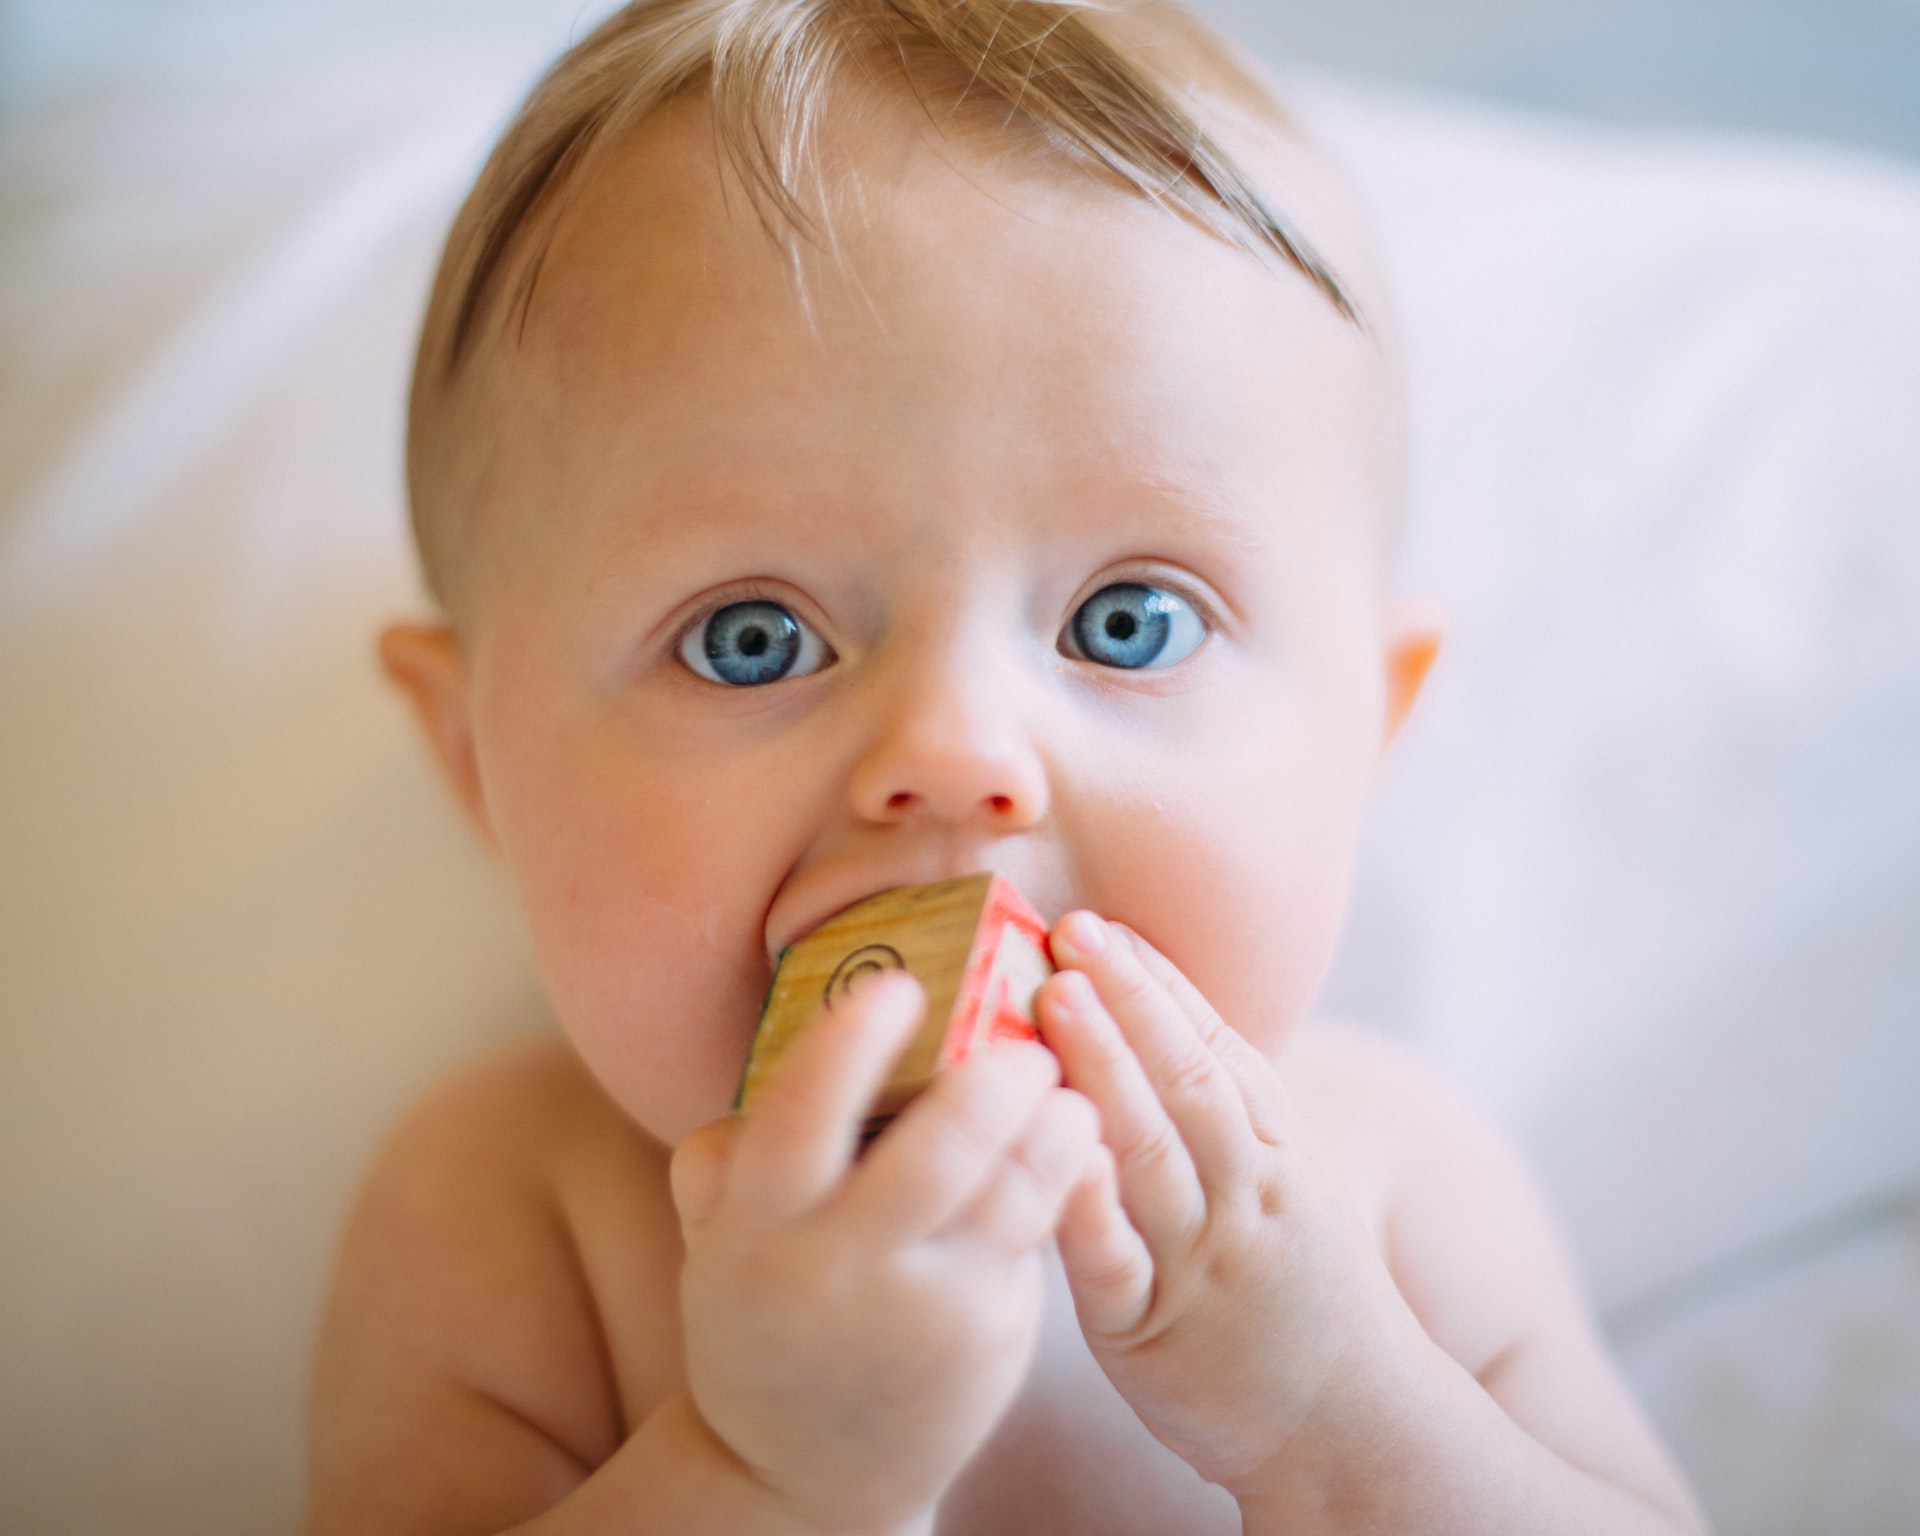 סקנדל התינוקת יגיע כנראה לסיומו: יופסקו הבדיקות הגנטיות